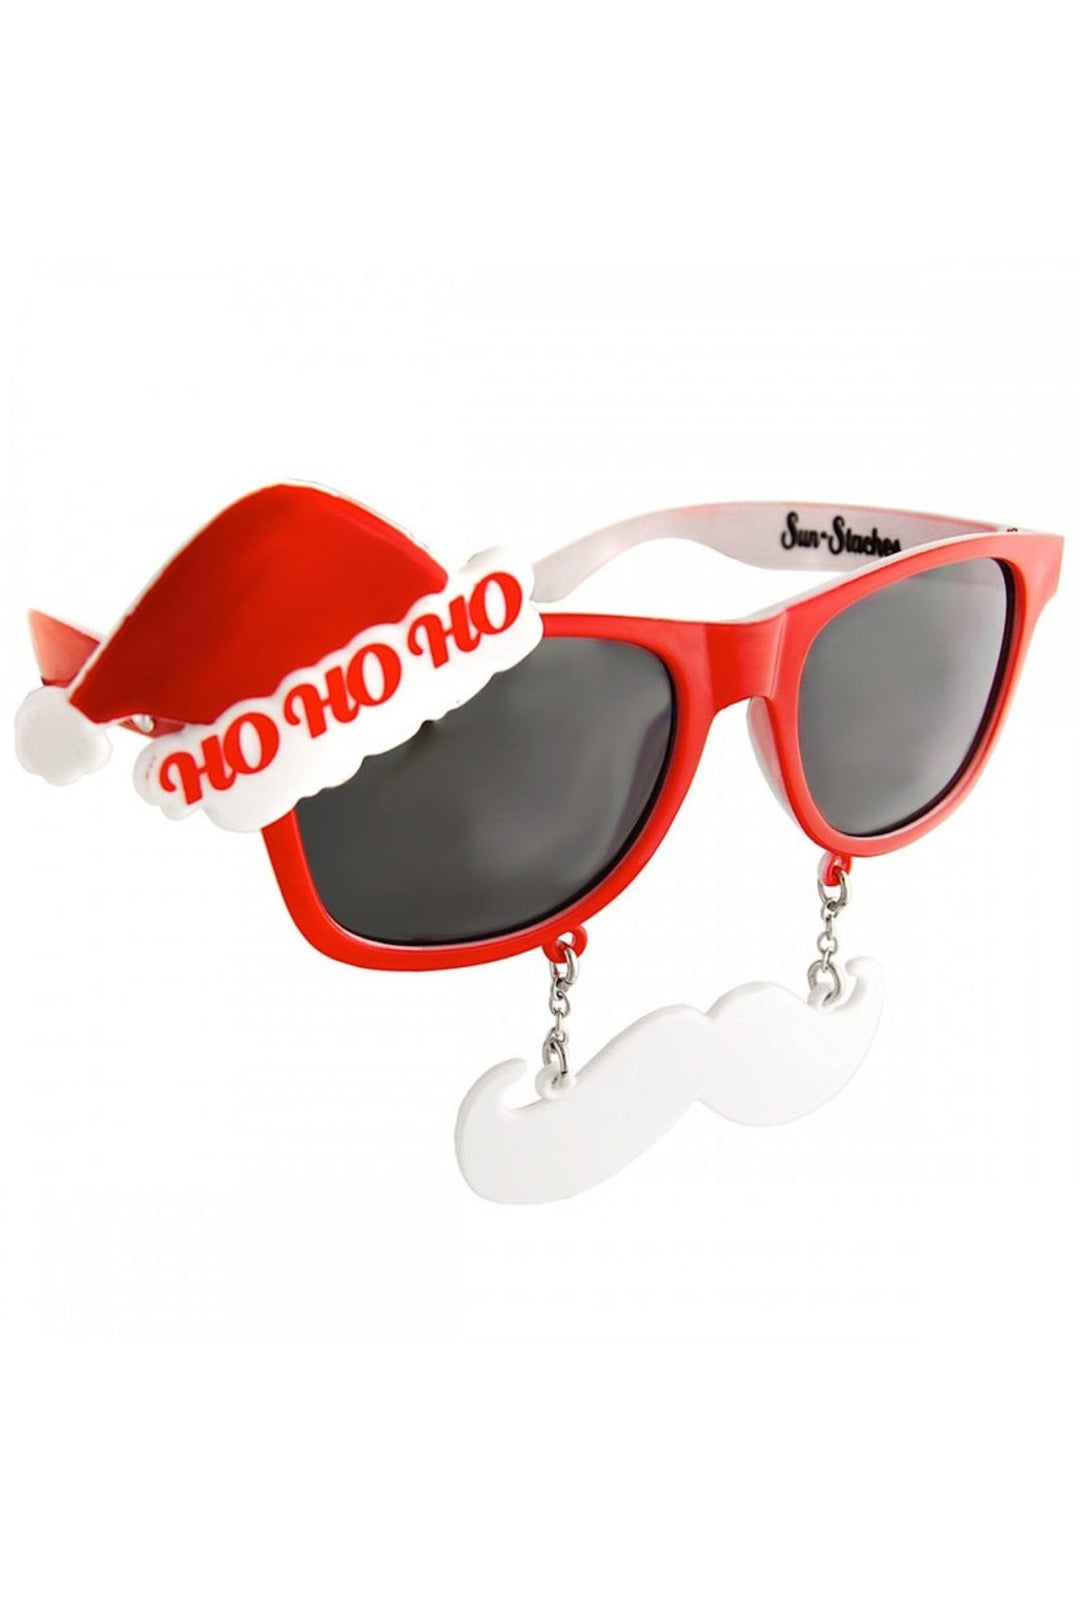 Ho Ho Ho Sunglasses